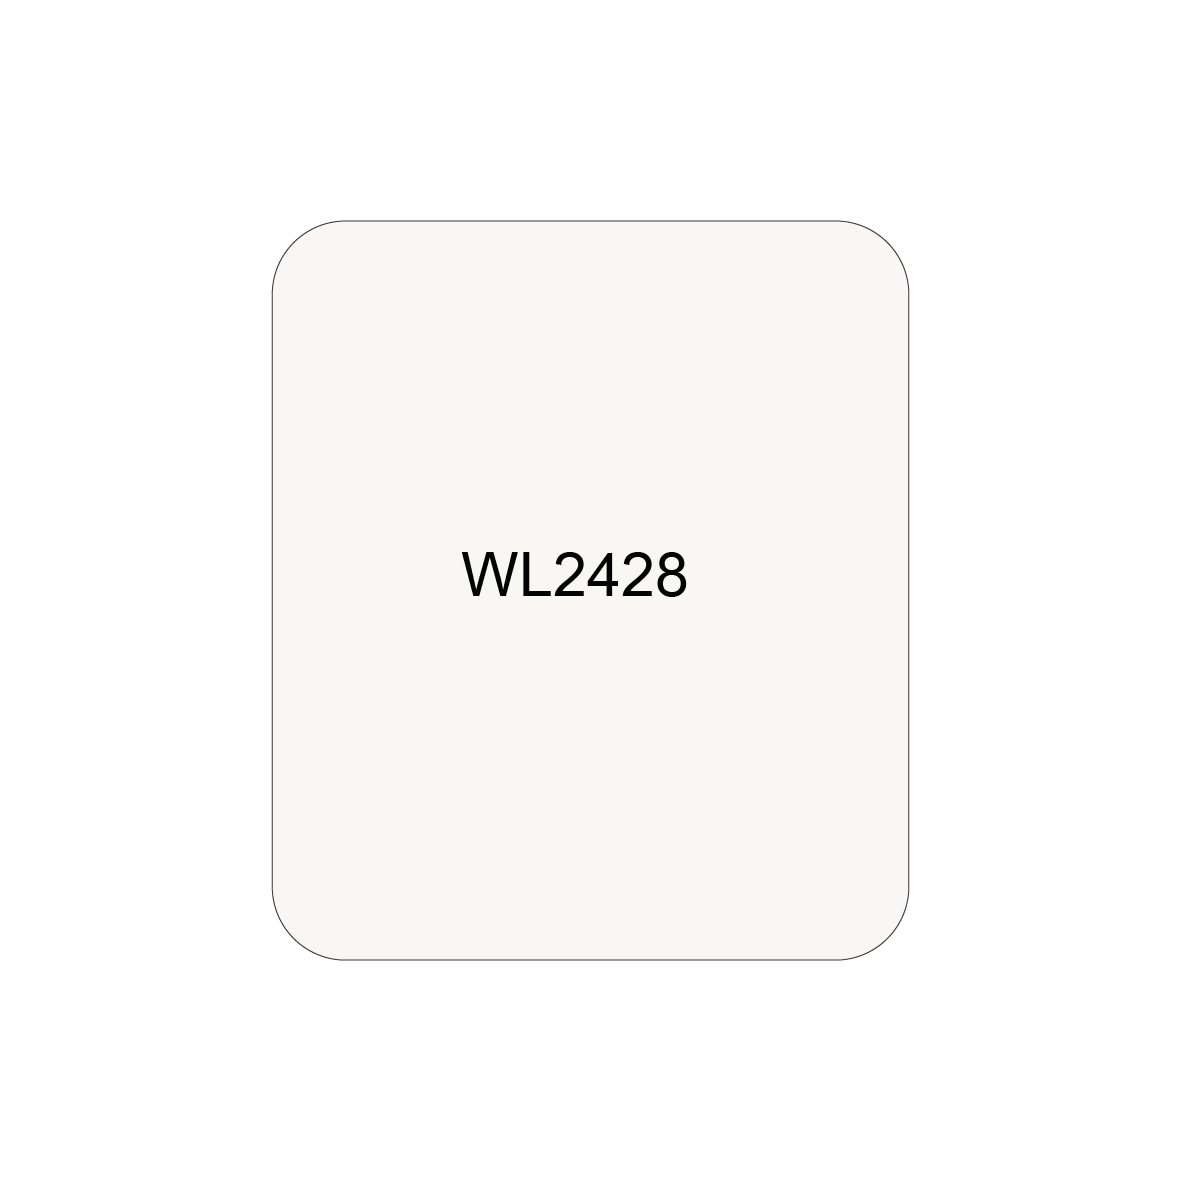 WL2428 - ASTAR SELF-ADHESIVE LABEL